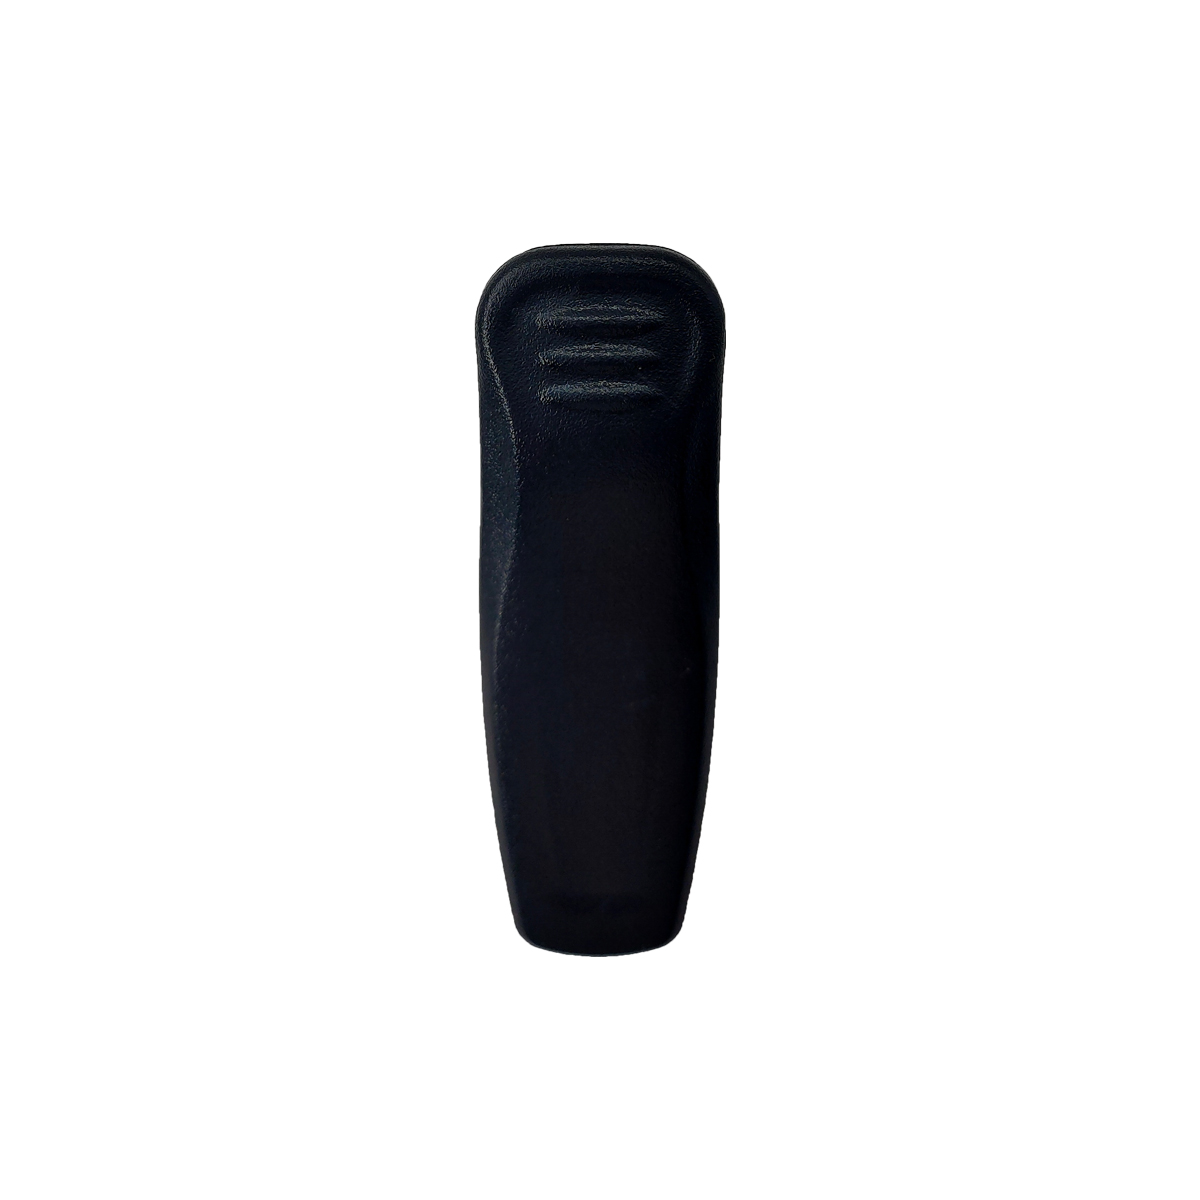 TC-600 walkie talkie belt clip